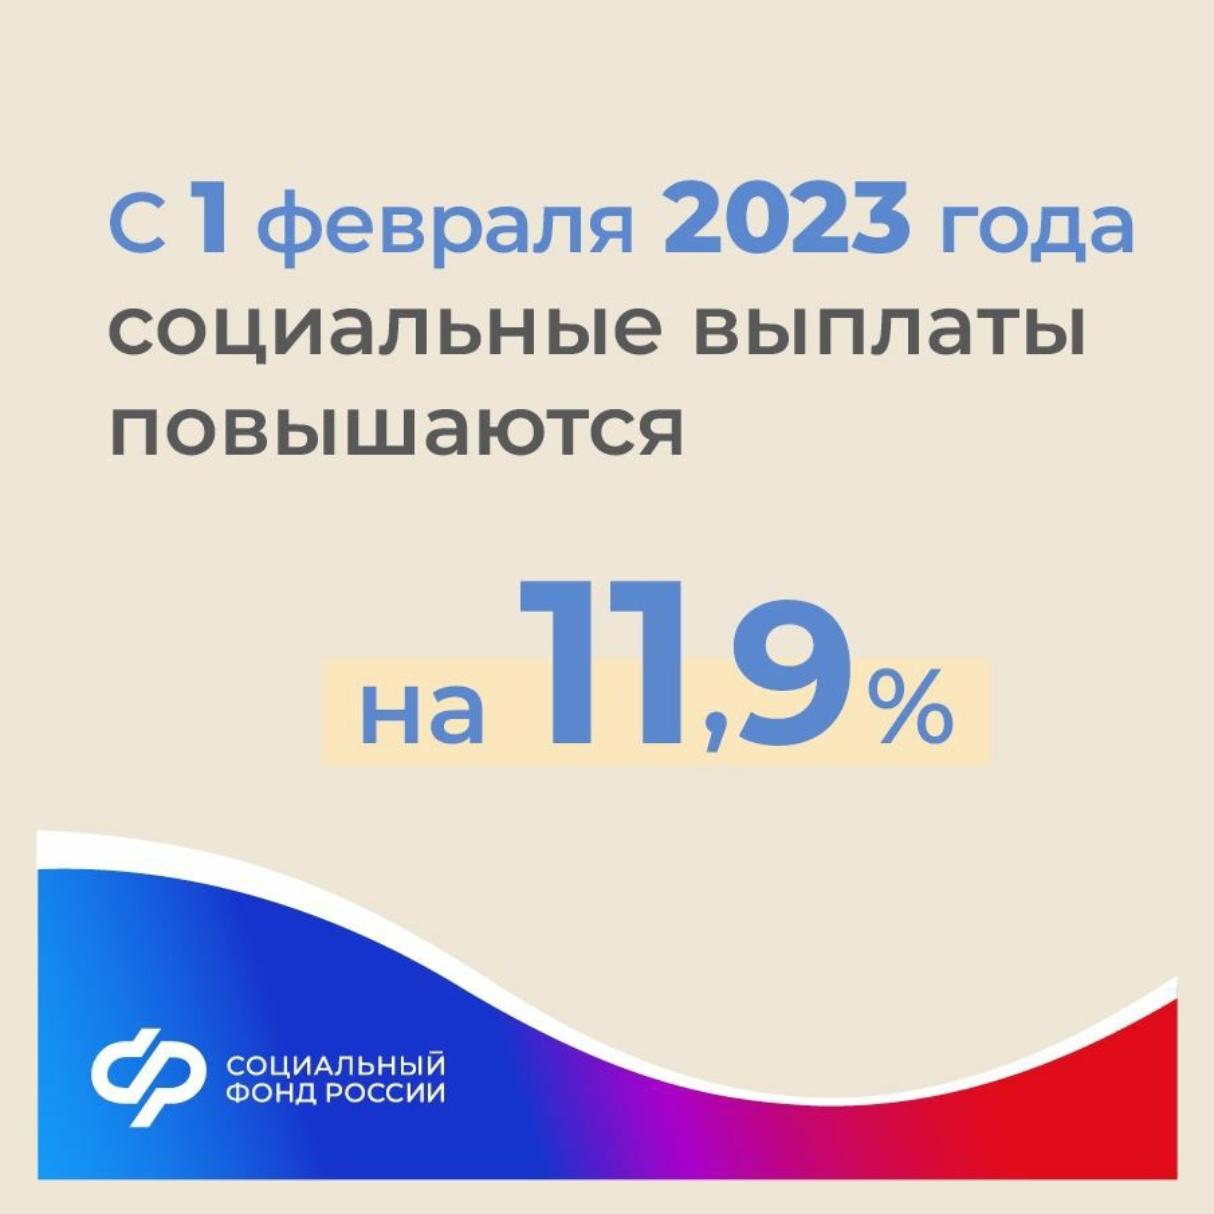 Материнский капитал в россии 2023. Социальные выплаты повышаются. Соц пособия 2023. Индексация пособий. Соцвыплаты в 2023 году.